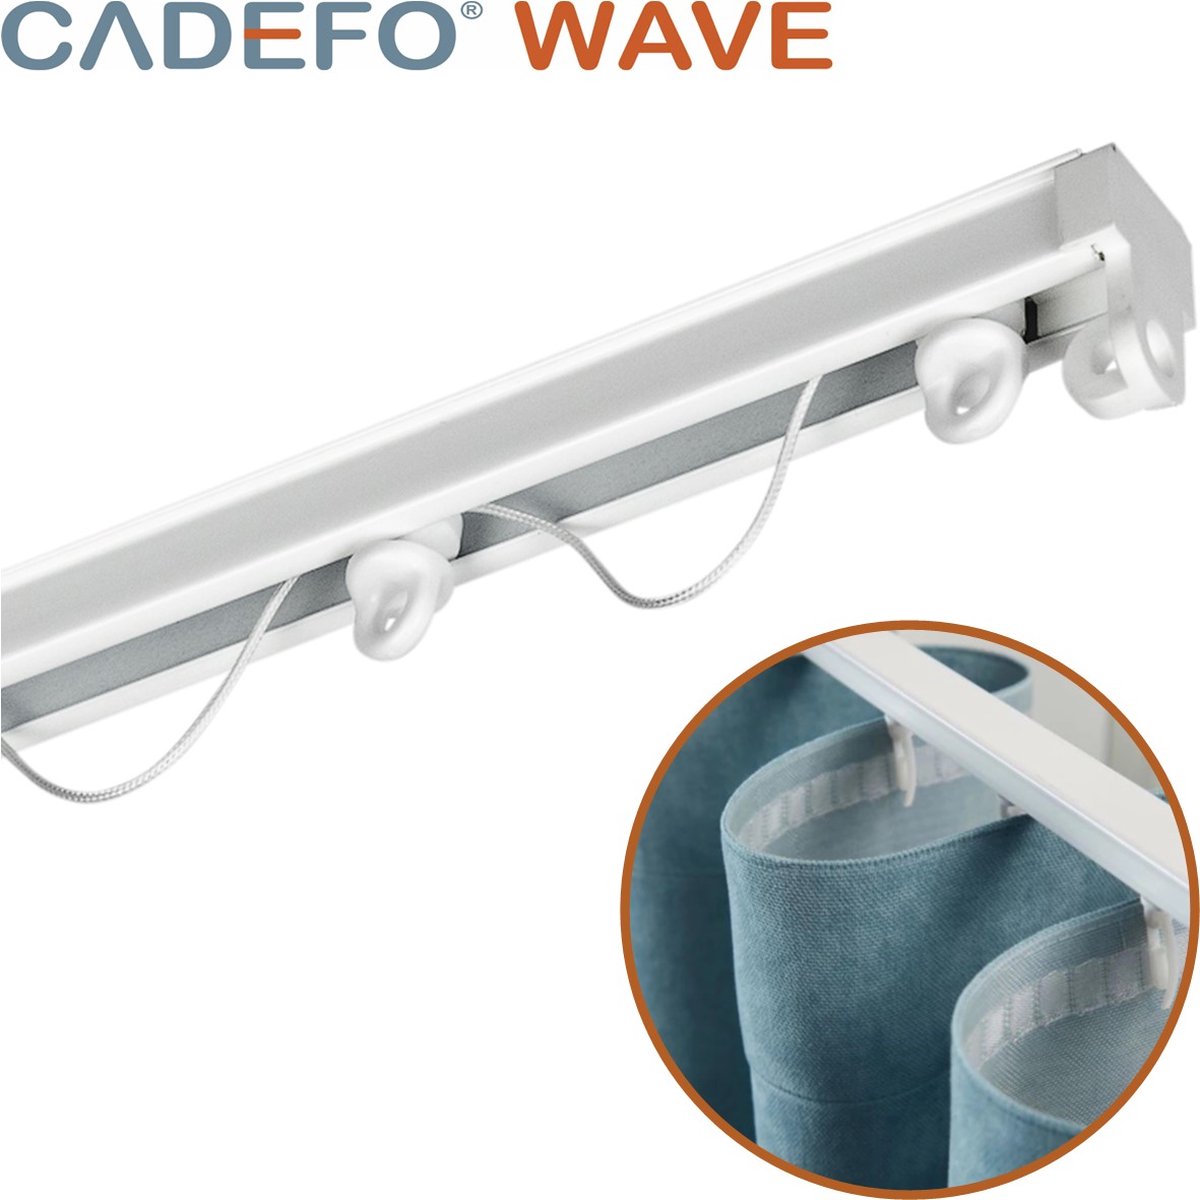 CADEFO WAVE (401 - 450 cm) Gordijnrails - Compleet op maat! - UIT 1 STUK - Leverbaar tot 6 meter - Plafondbevestiging - Lengte 450 cm - 4,5 meter